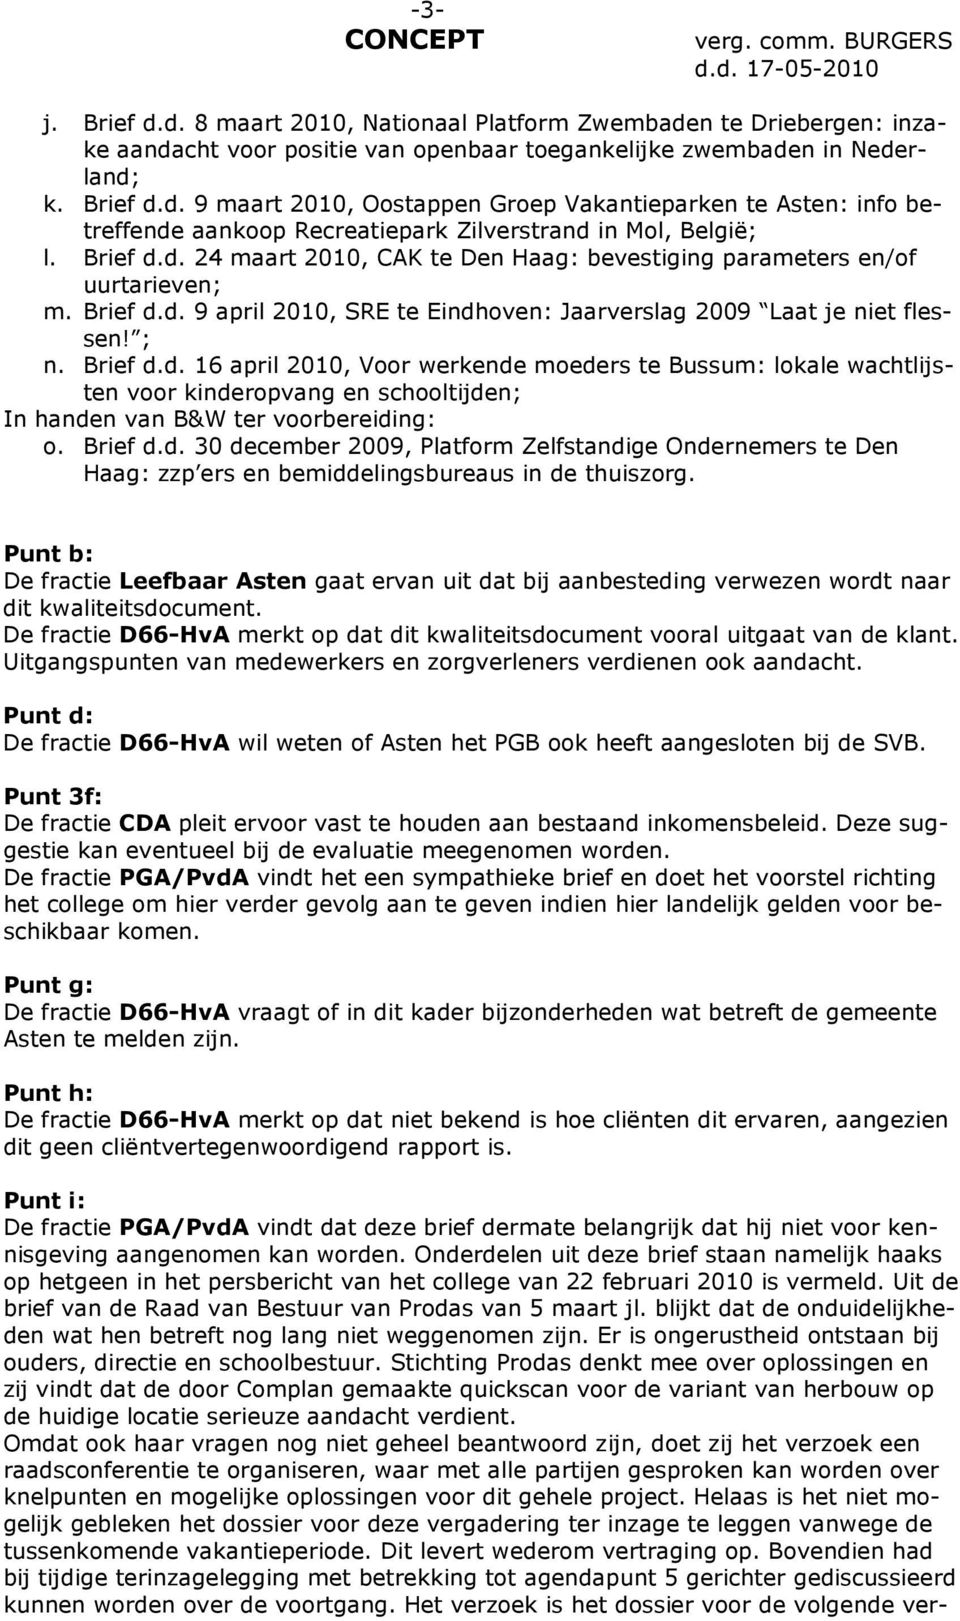 Brief d.d. 30 december 2009, Platform Zelfstandige Ondernemers te Den Haag: zzp ers en bemiddelingsbureaus in de thuiszorg.